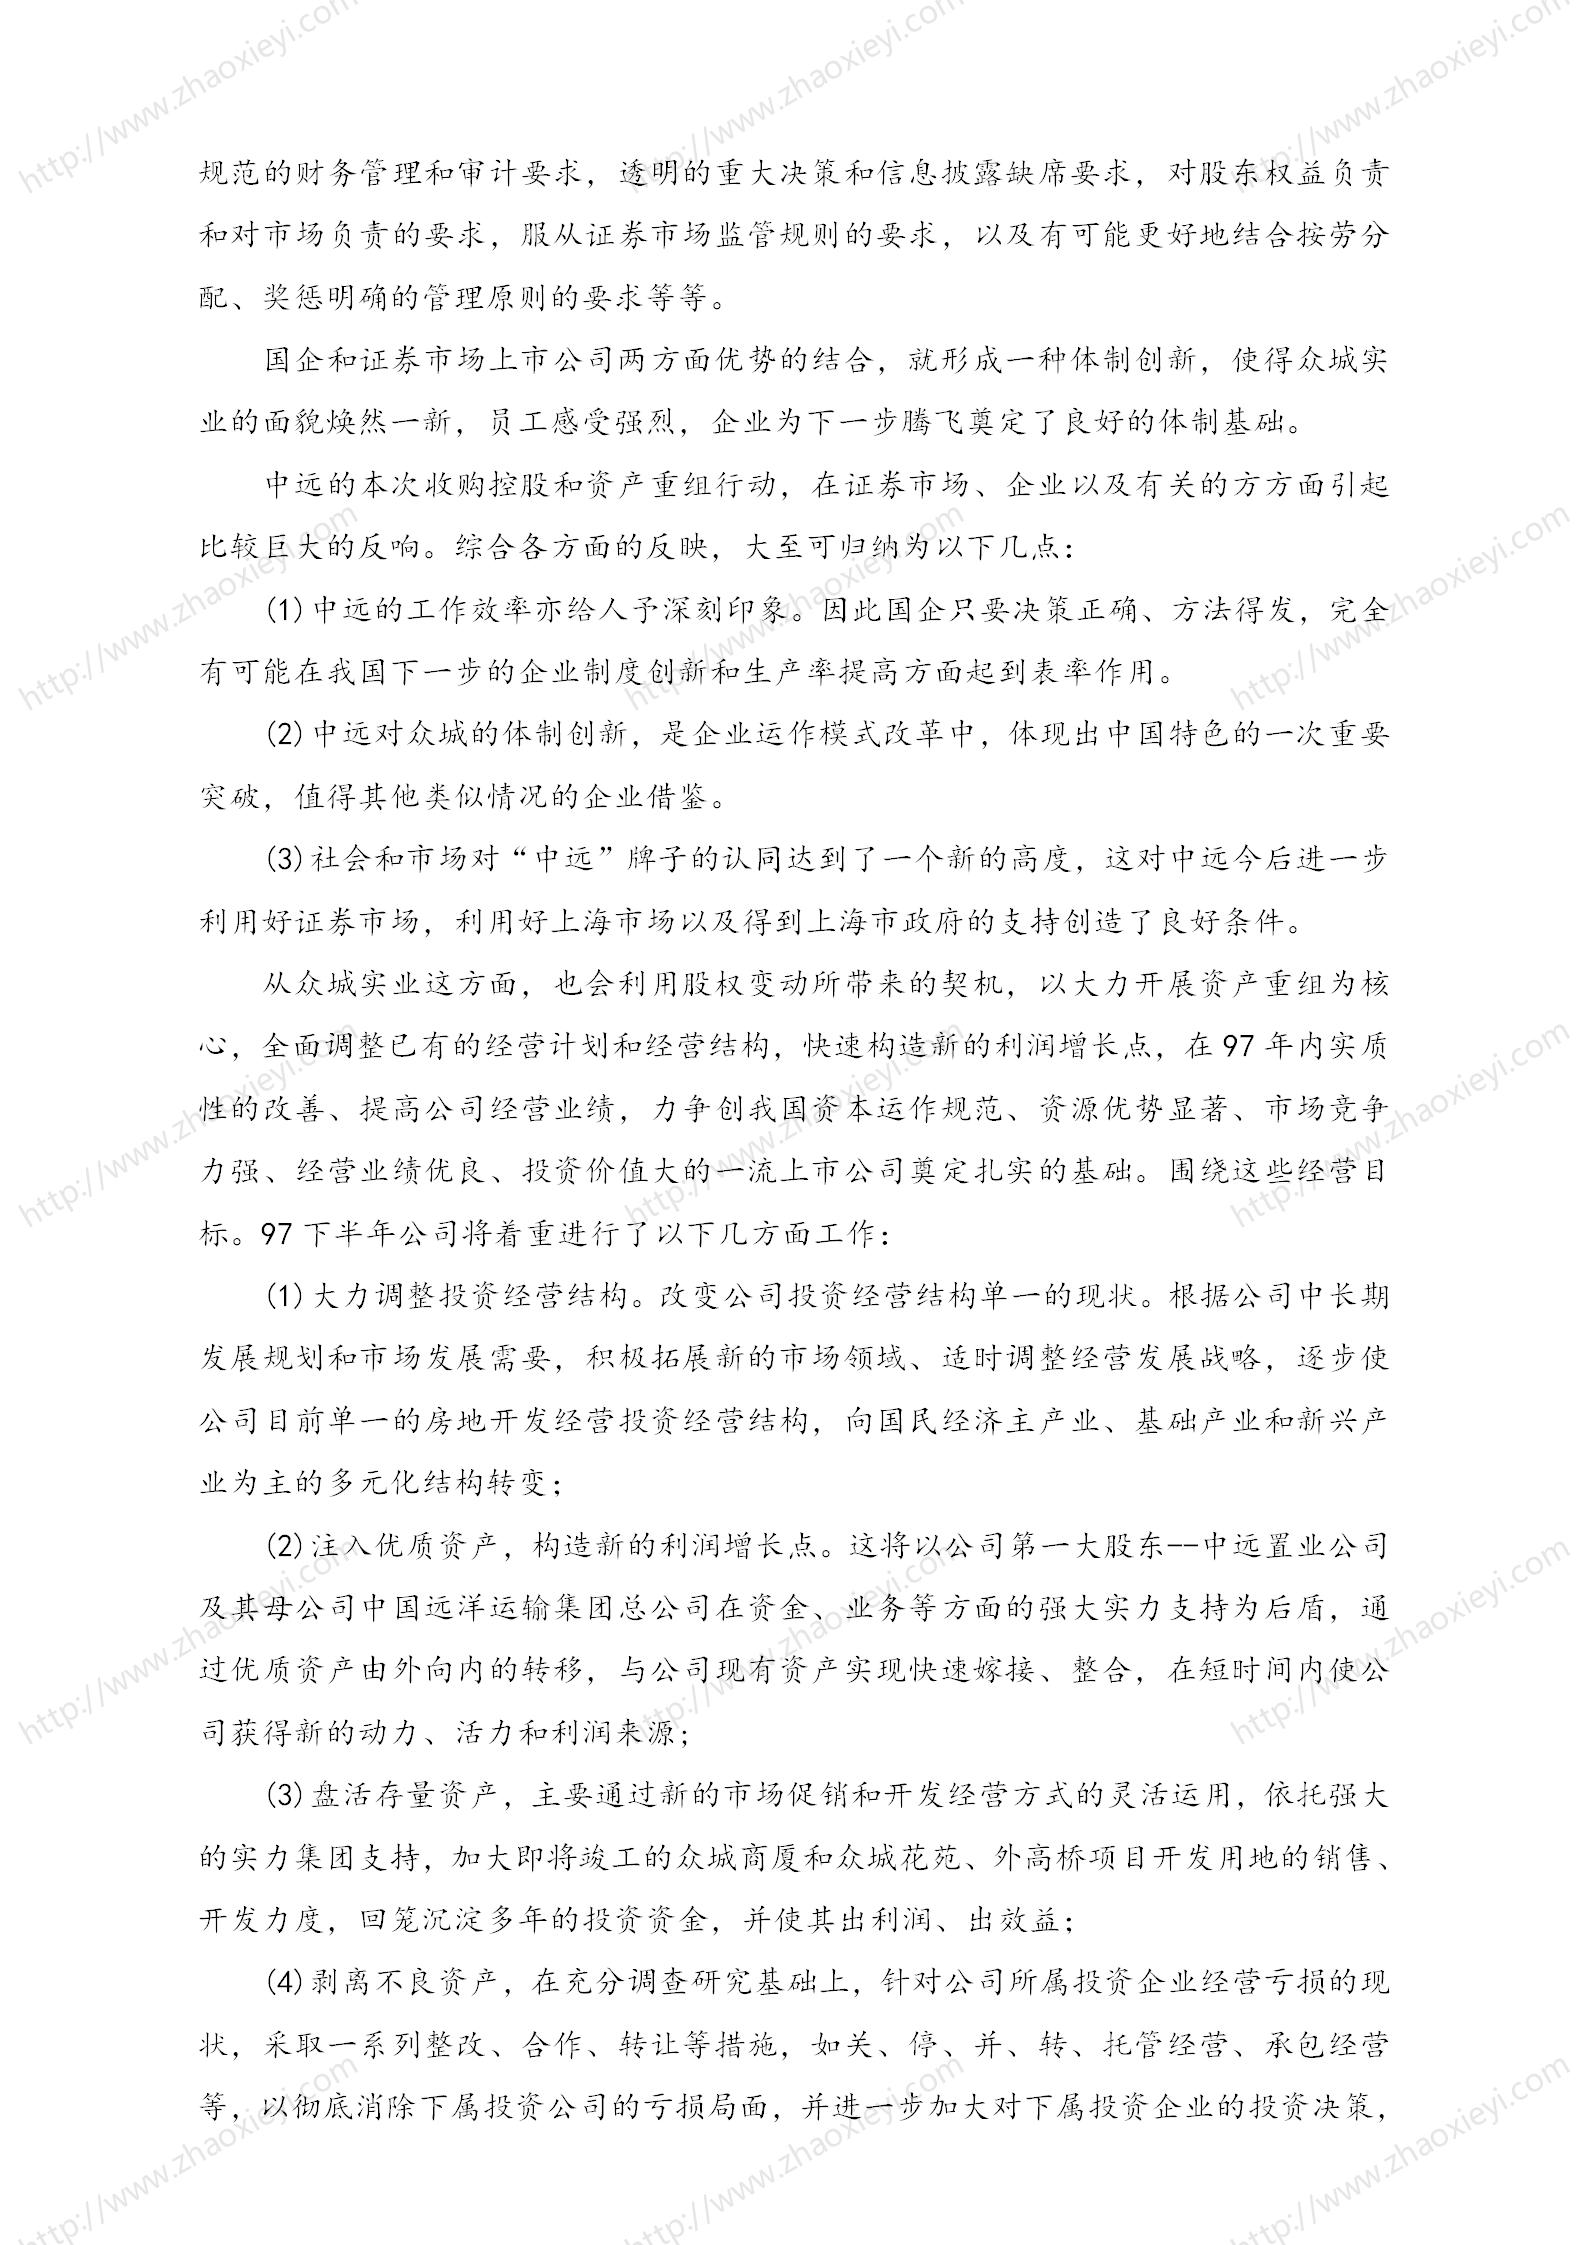 中国企业并购经典案例_119.jpg